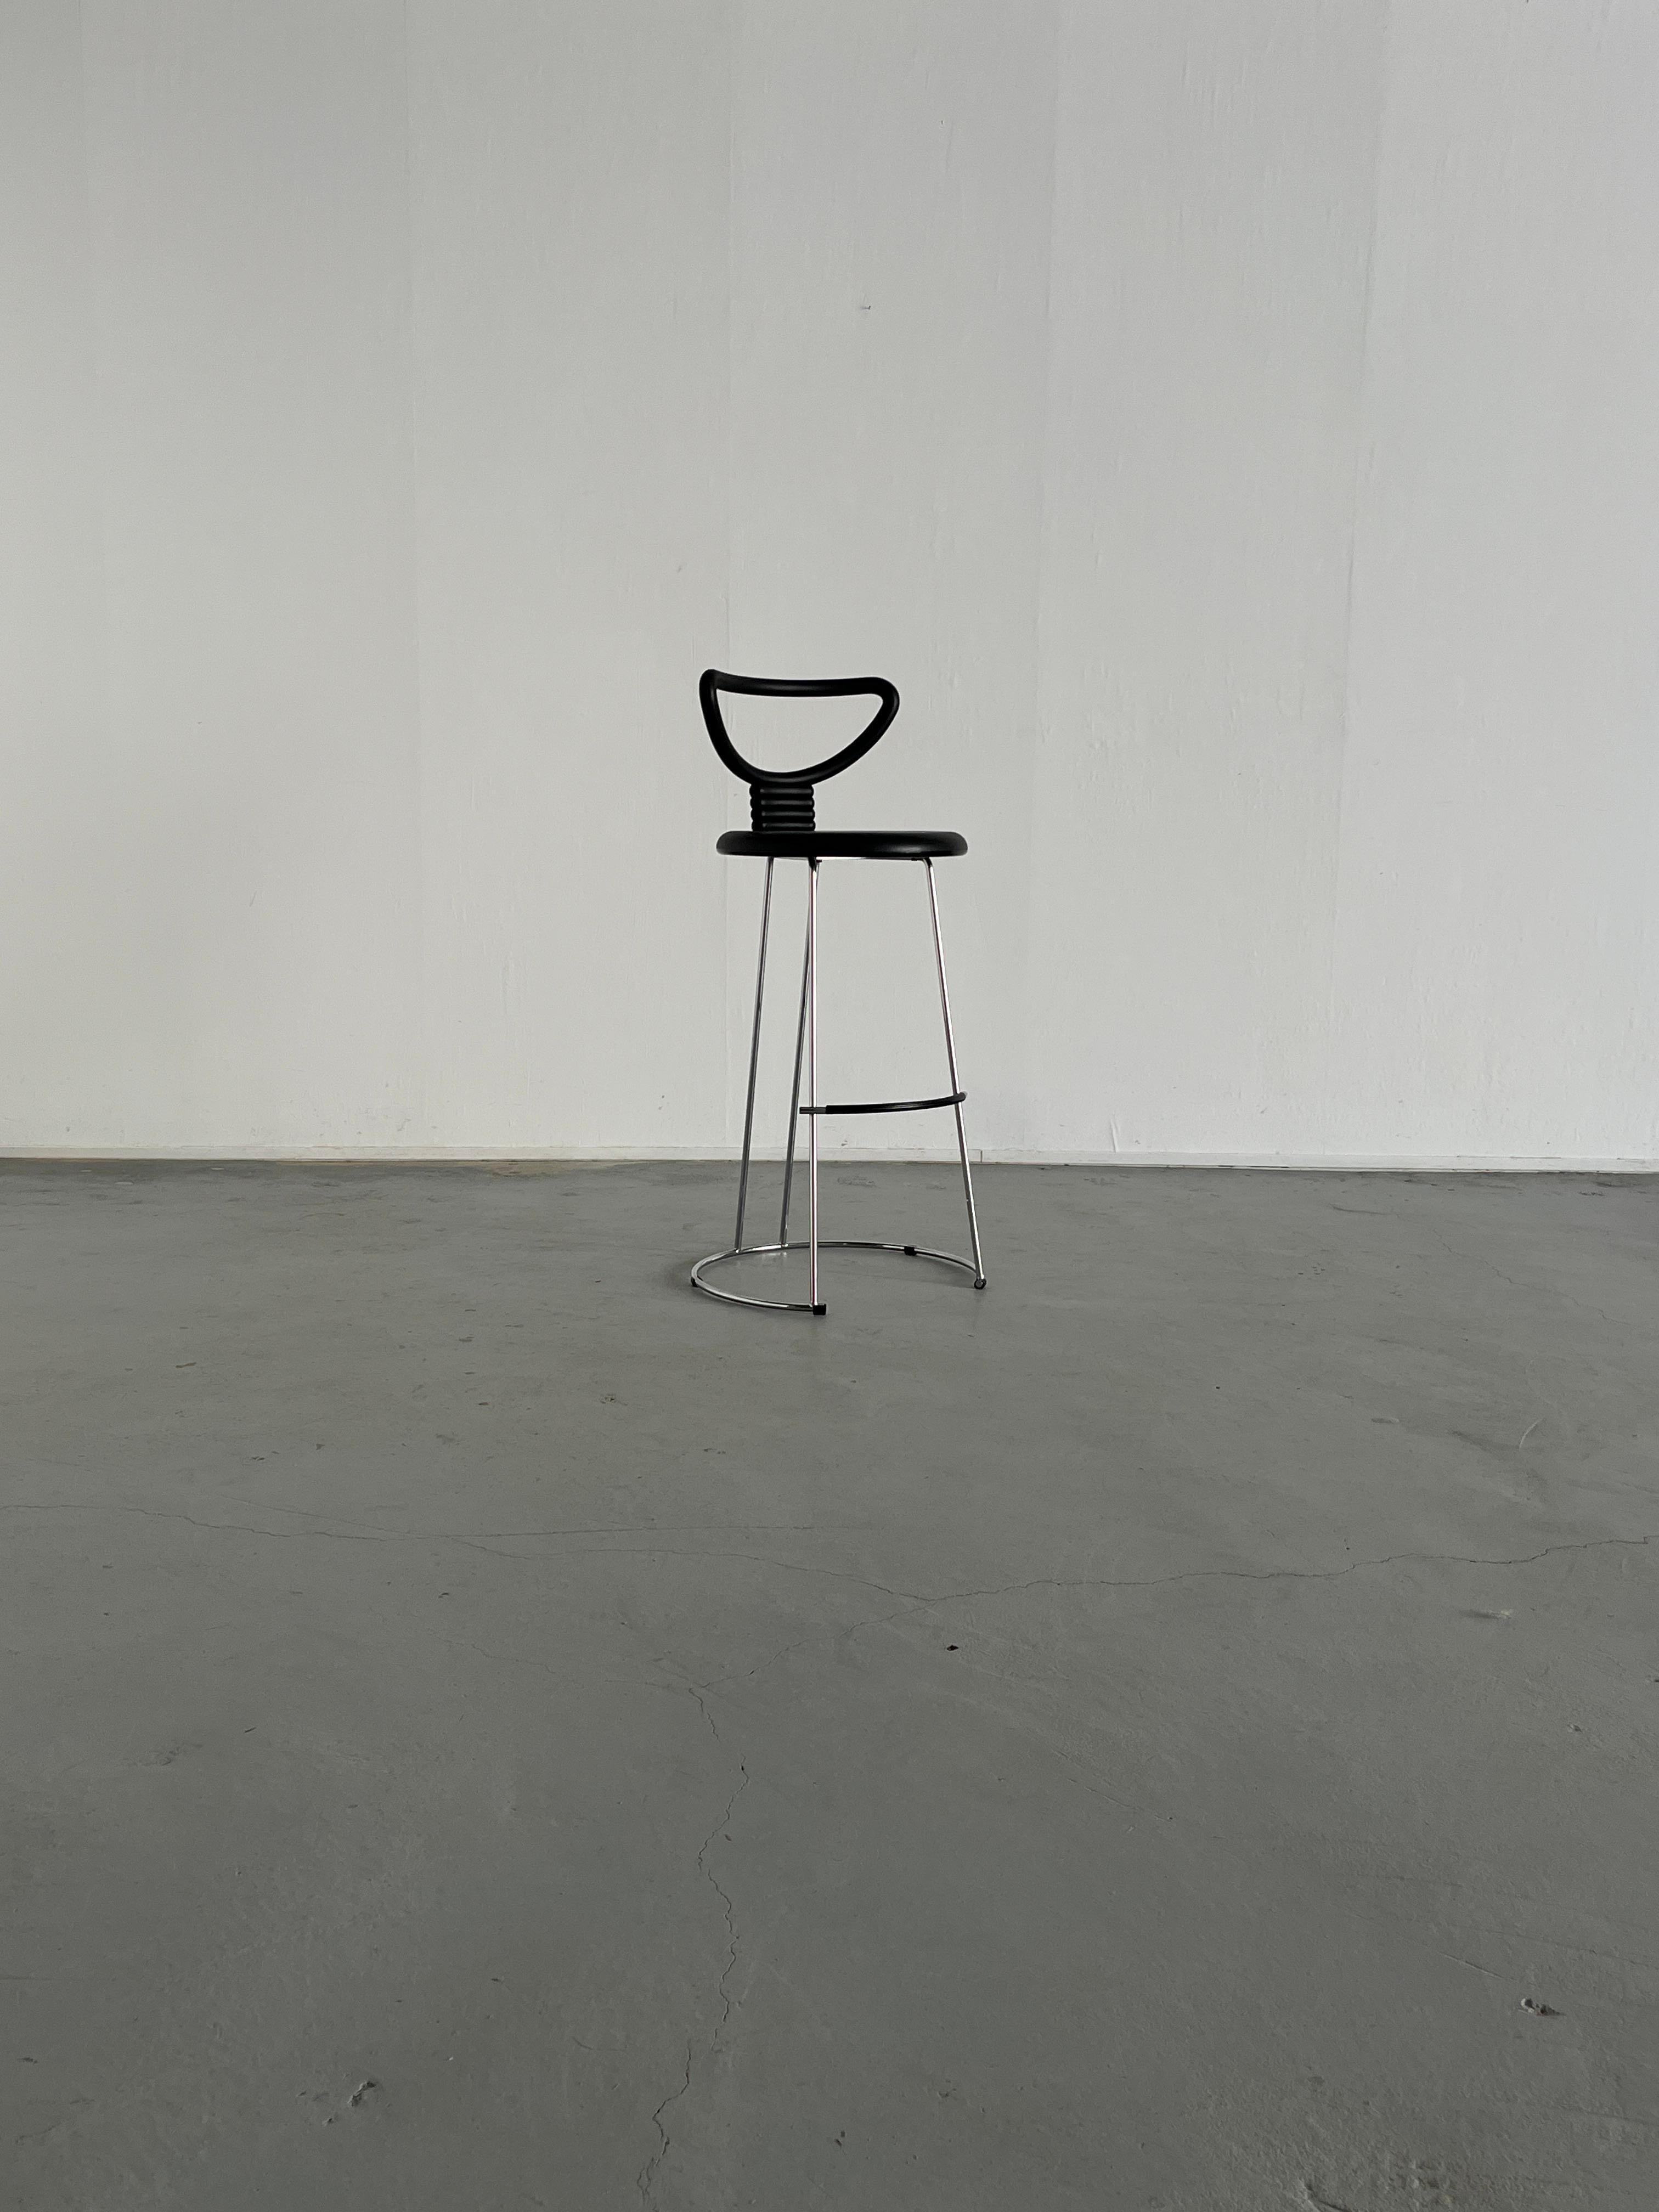 Tabouret de bar 'Nardi' avec des sièges en caoutchouc sur une structure en chrome poli, conçu par Nobu Tanigawa pour Fasem Italie.
Un design postmoderne unique associé à un grand confort.

La chaise est dotée d'un cadre en acier robuste, d'un